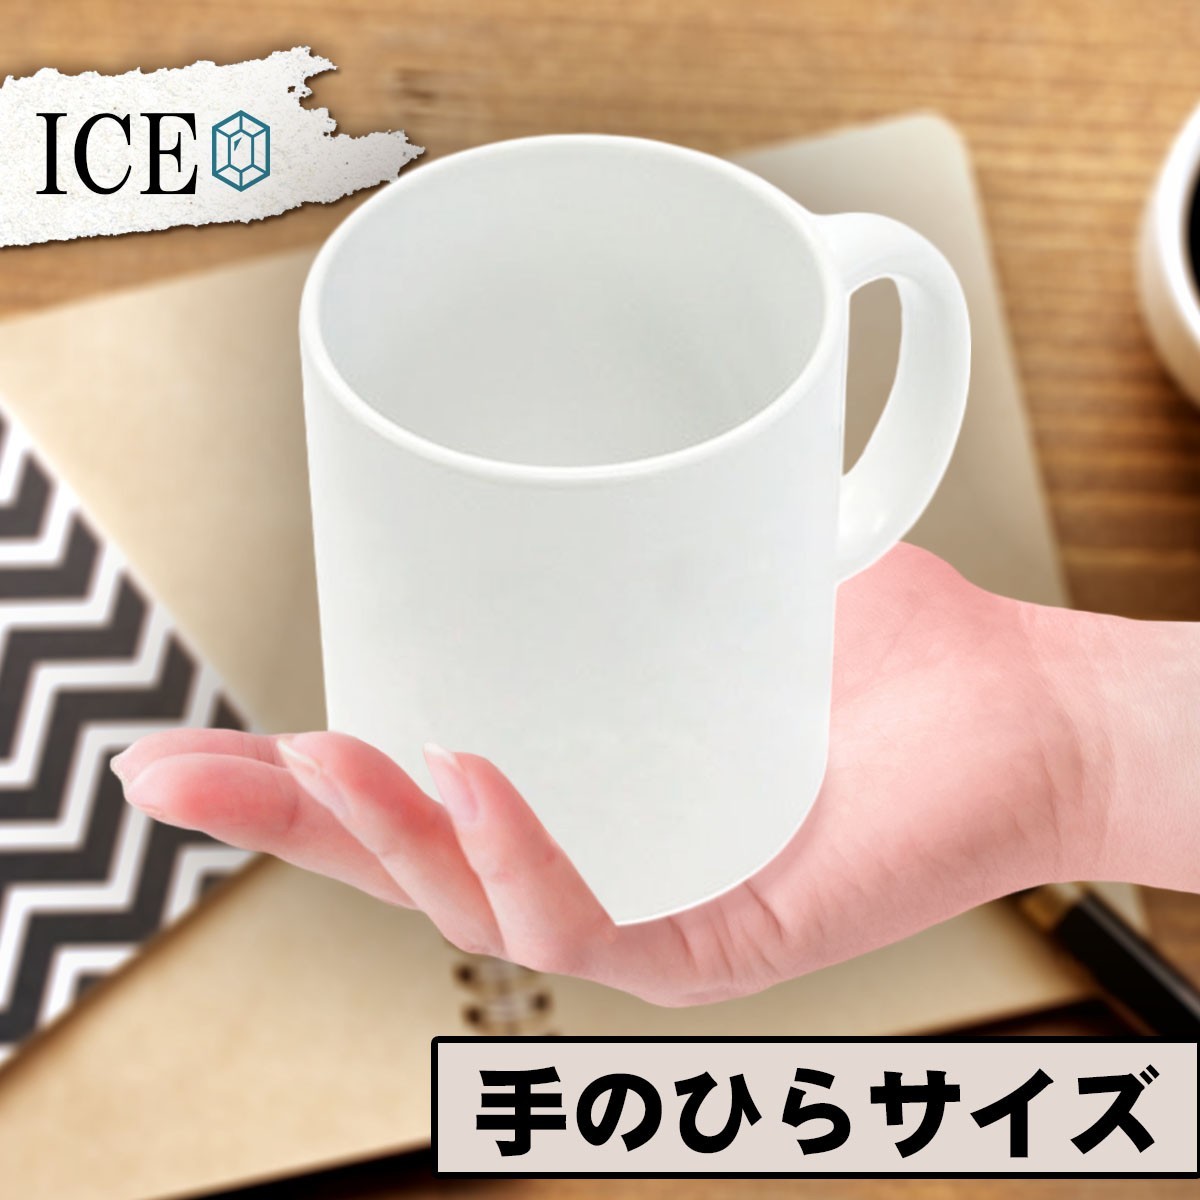 たぬき おもしろ マグカップ コップ 陶器 可愛い かわいい 白 シンプル かわいい カッコイイ シュール 面白い ジョーク ゆるい プレゼントの画像2